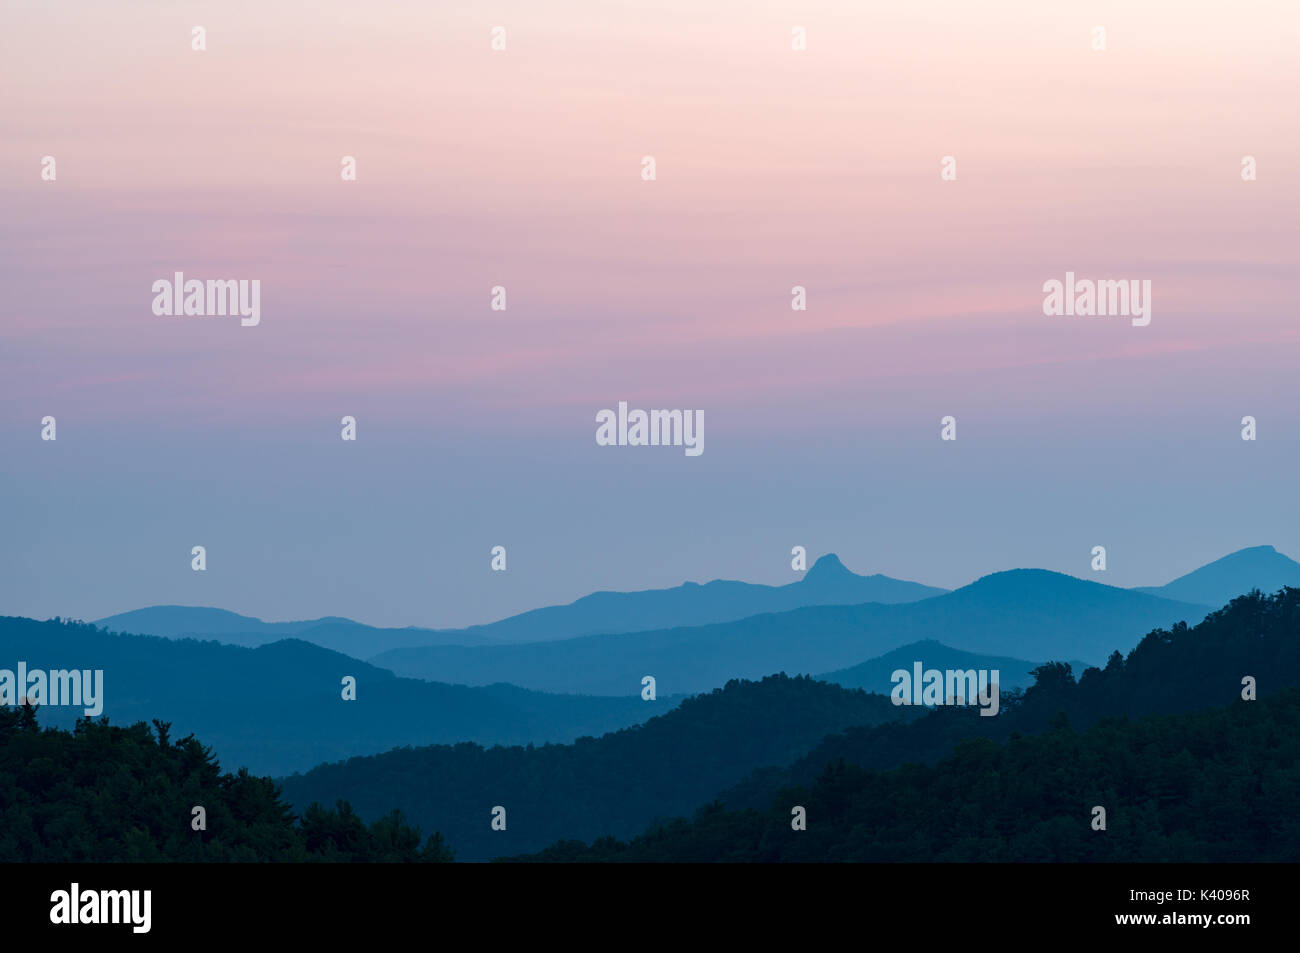 Künstlerische und minimale Sonnenuntergang North Carolina Berge - Beruhigend & entspannend - Sun Set Berge - Berge Himmel noch Rot wird nach Einbruch der Dunkelheit Licht Stockfoto